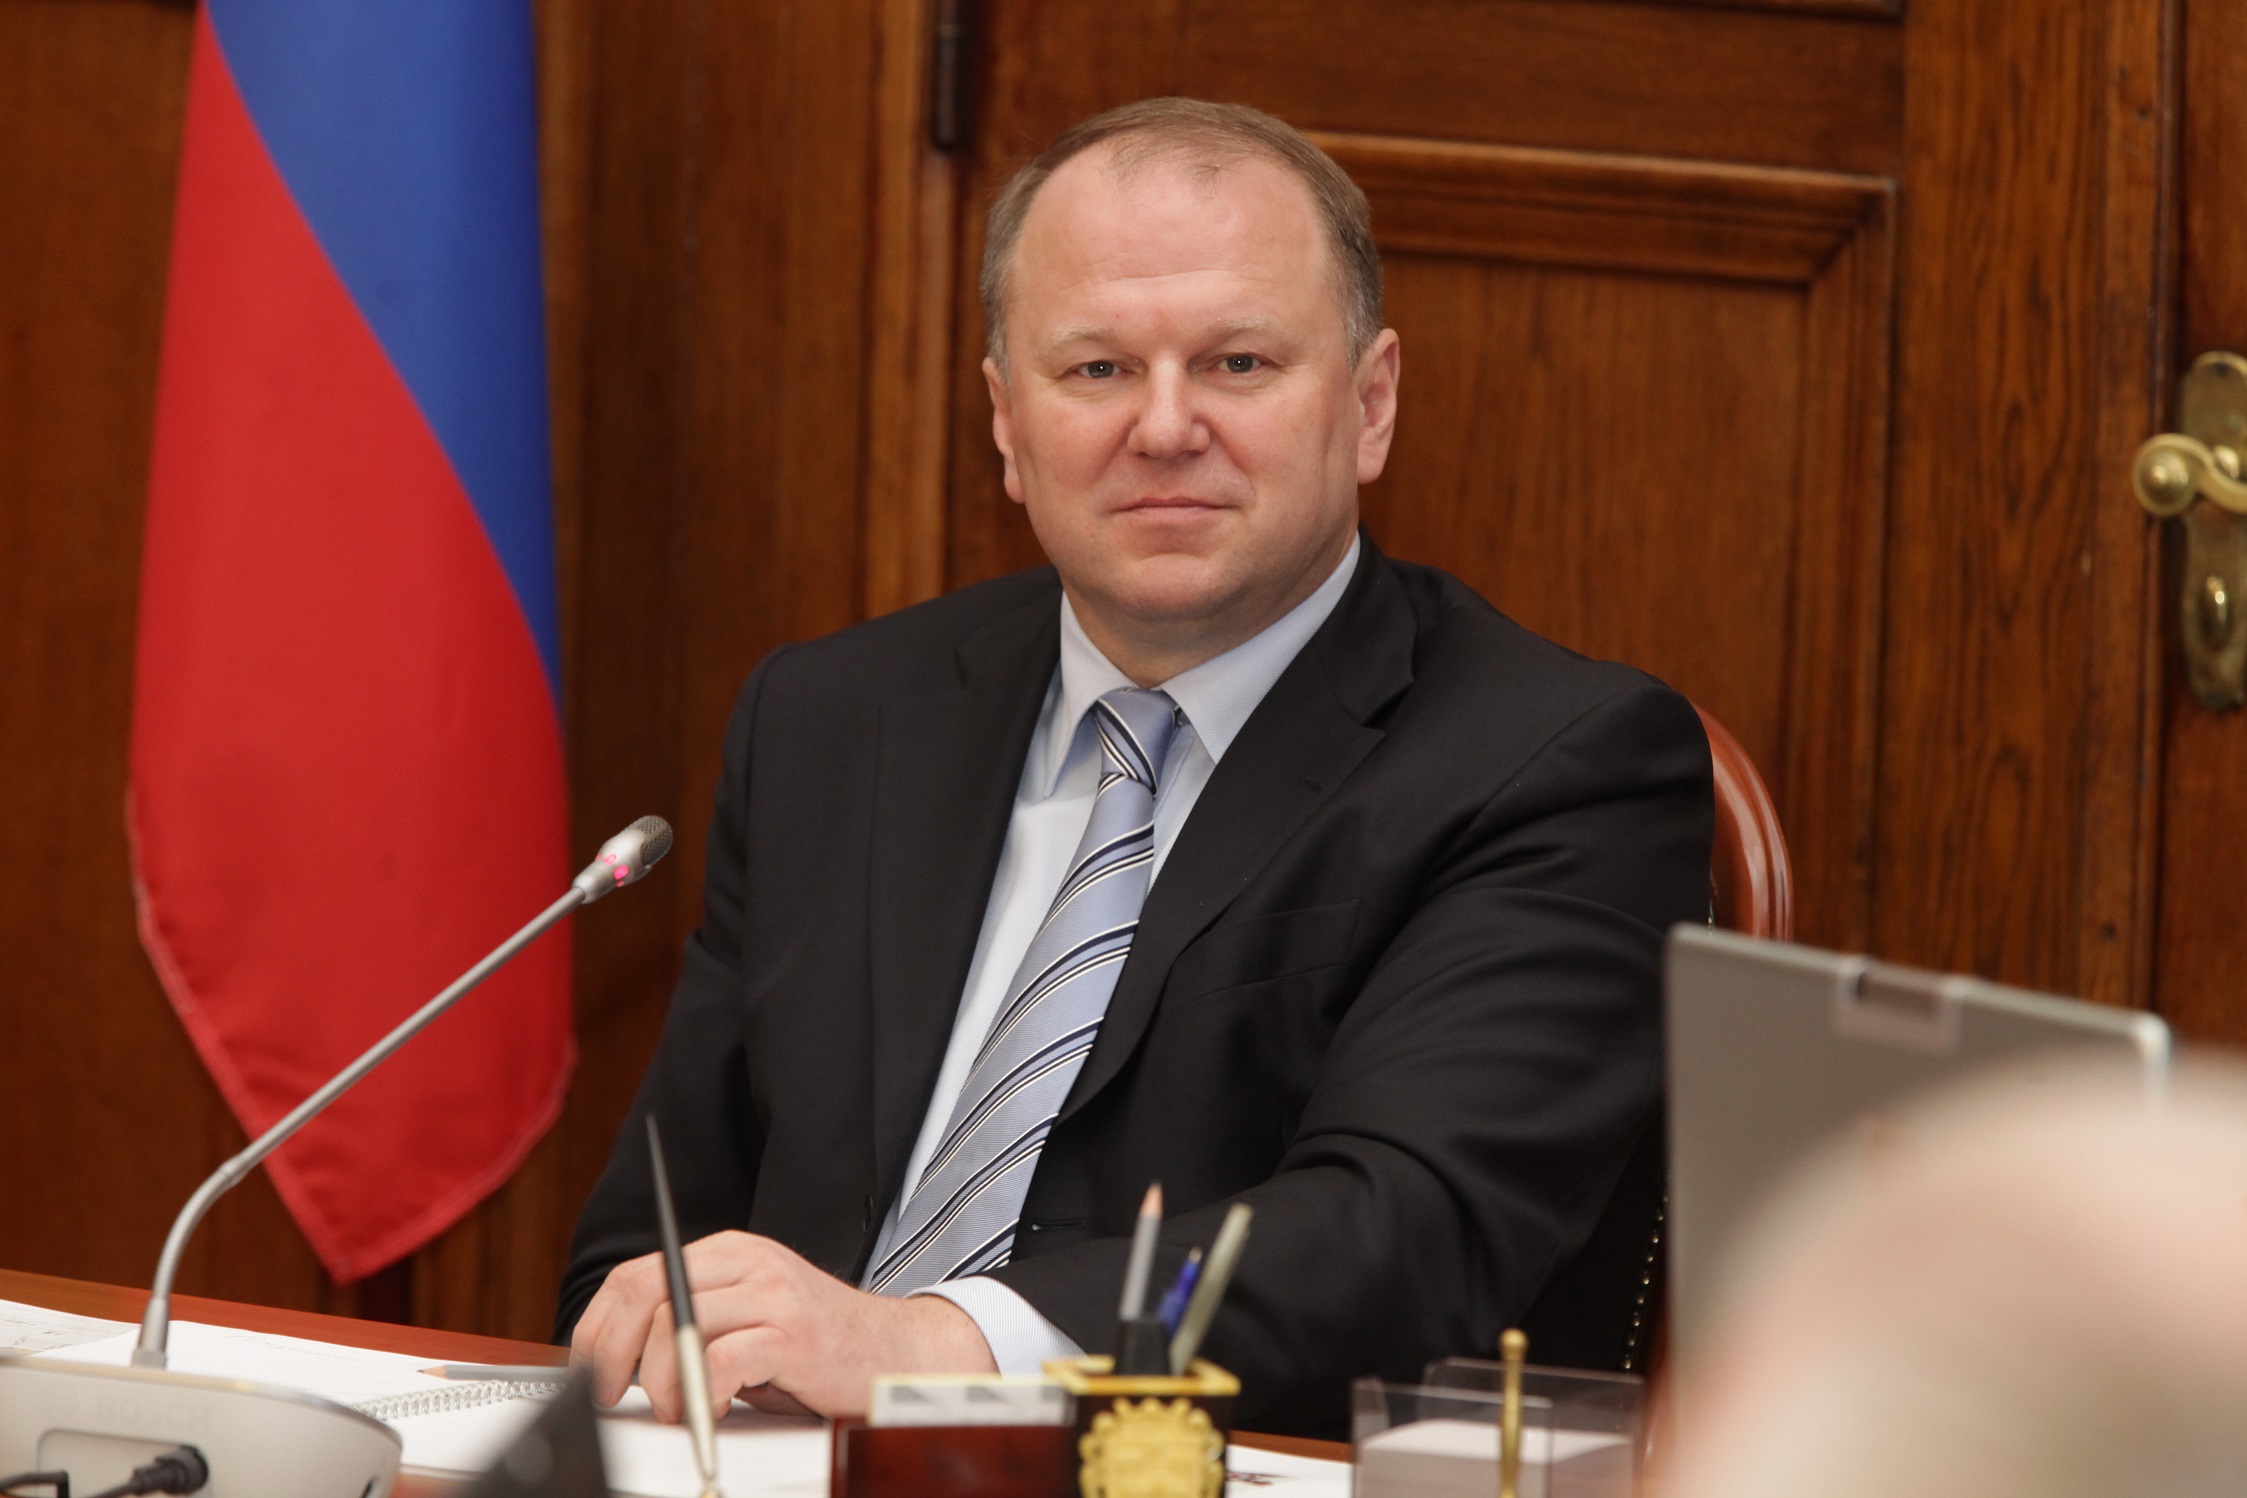 Цуканов Николай Николаевич, полномочный представитель Президента России в УрФО